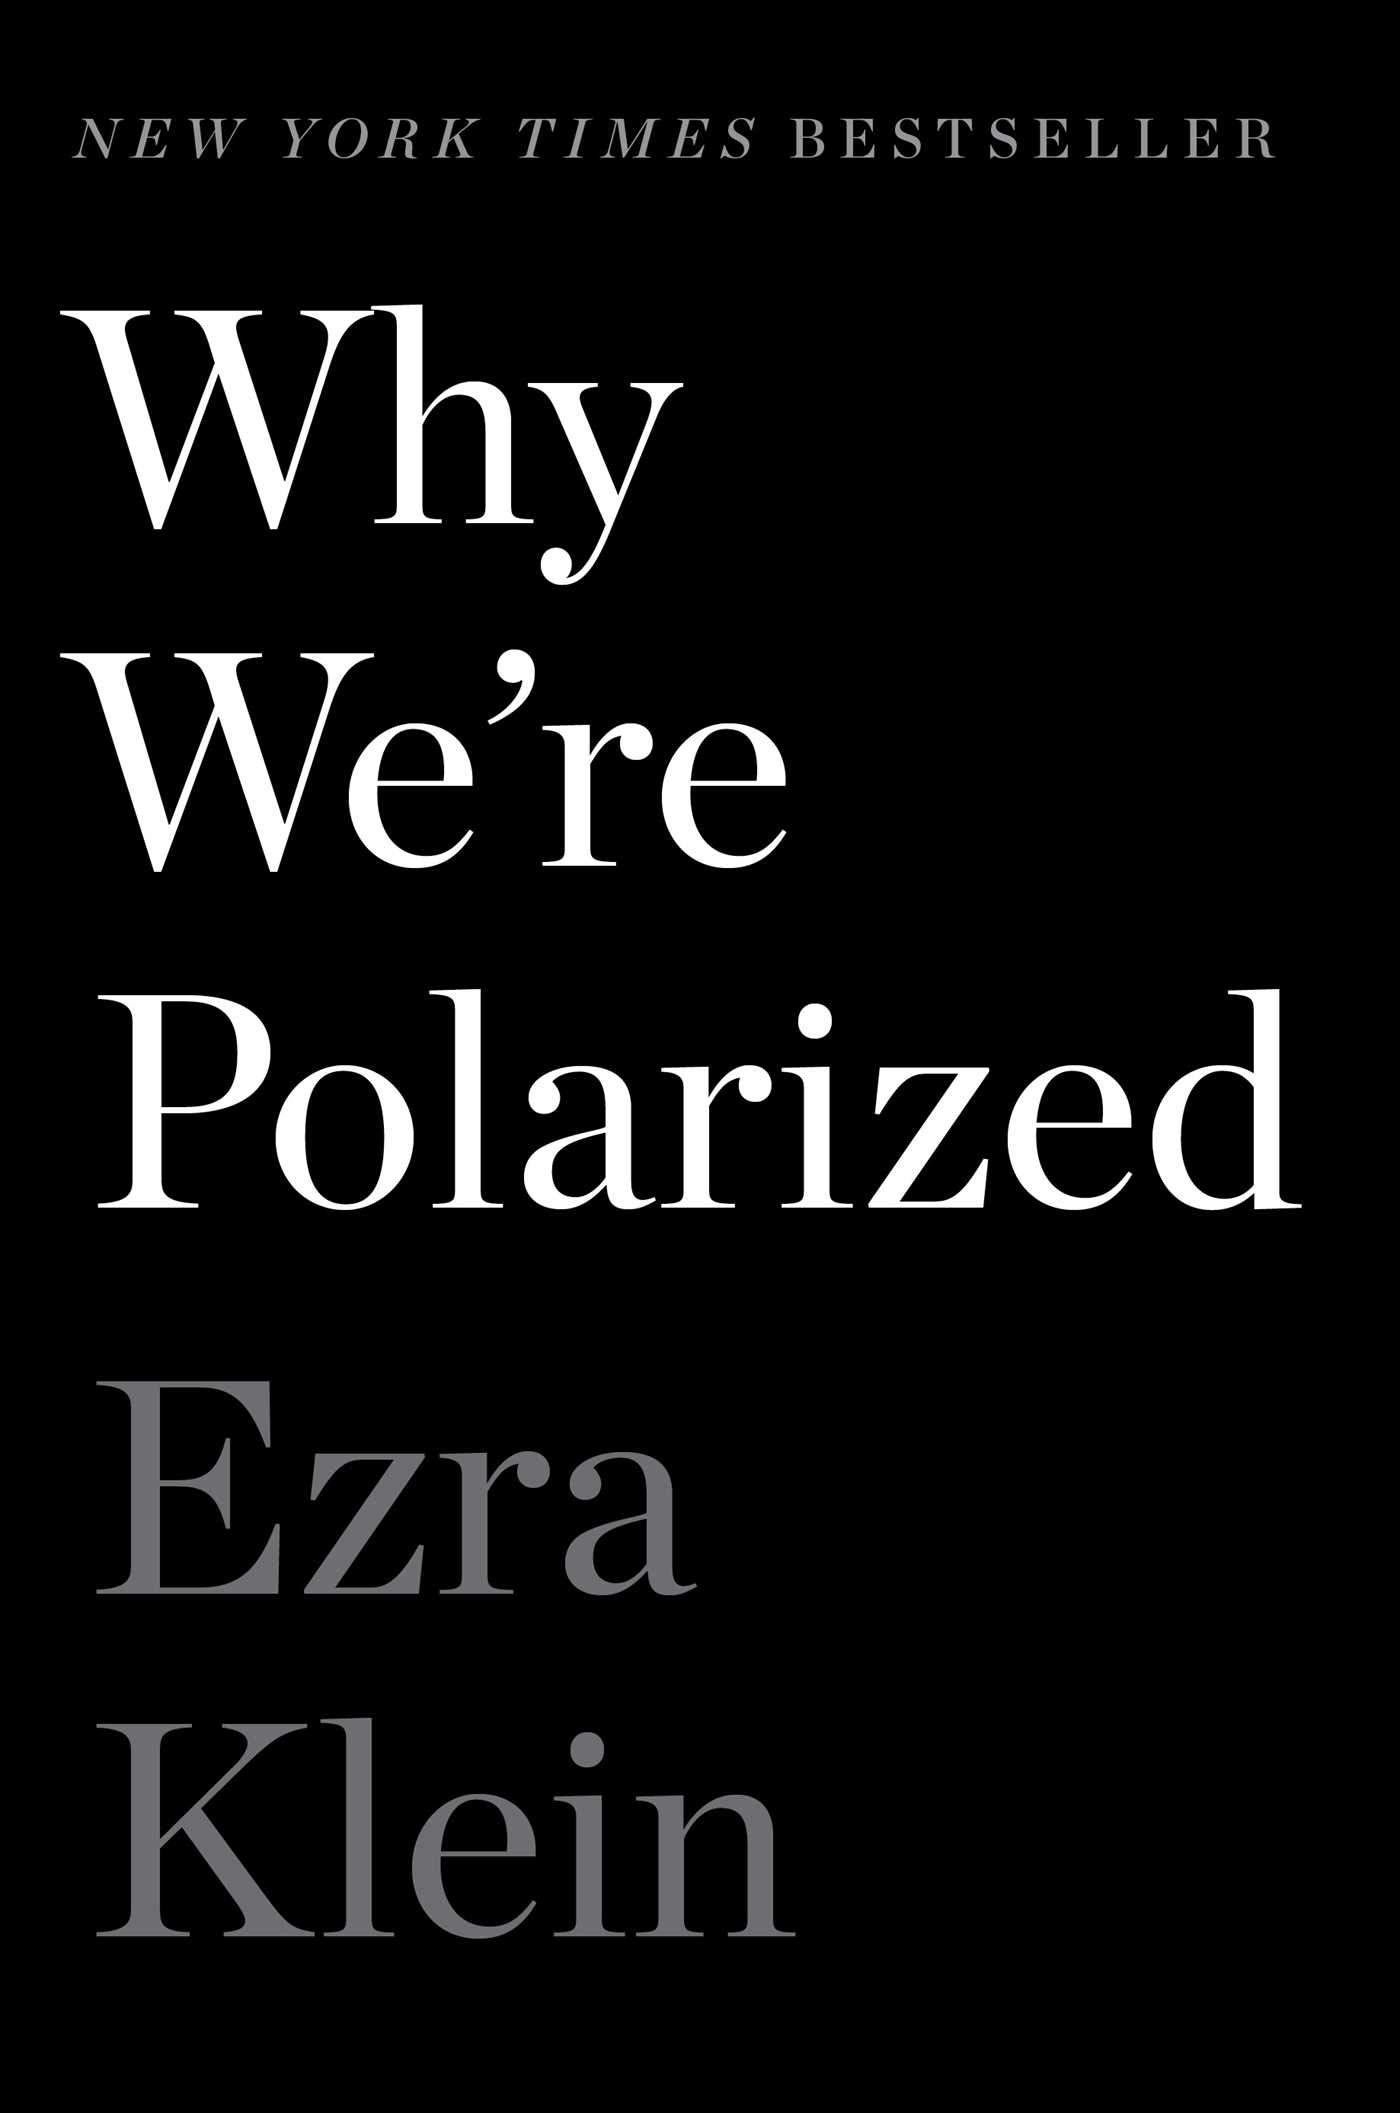 Ezra Klein: Why We're Polarized (AudiobookFormat, 2020, Simon & Schuster Audio)